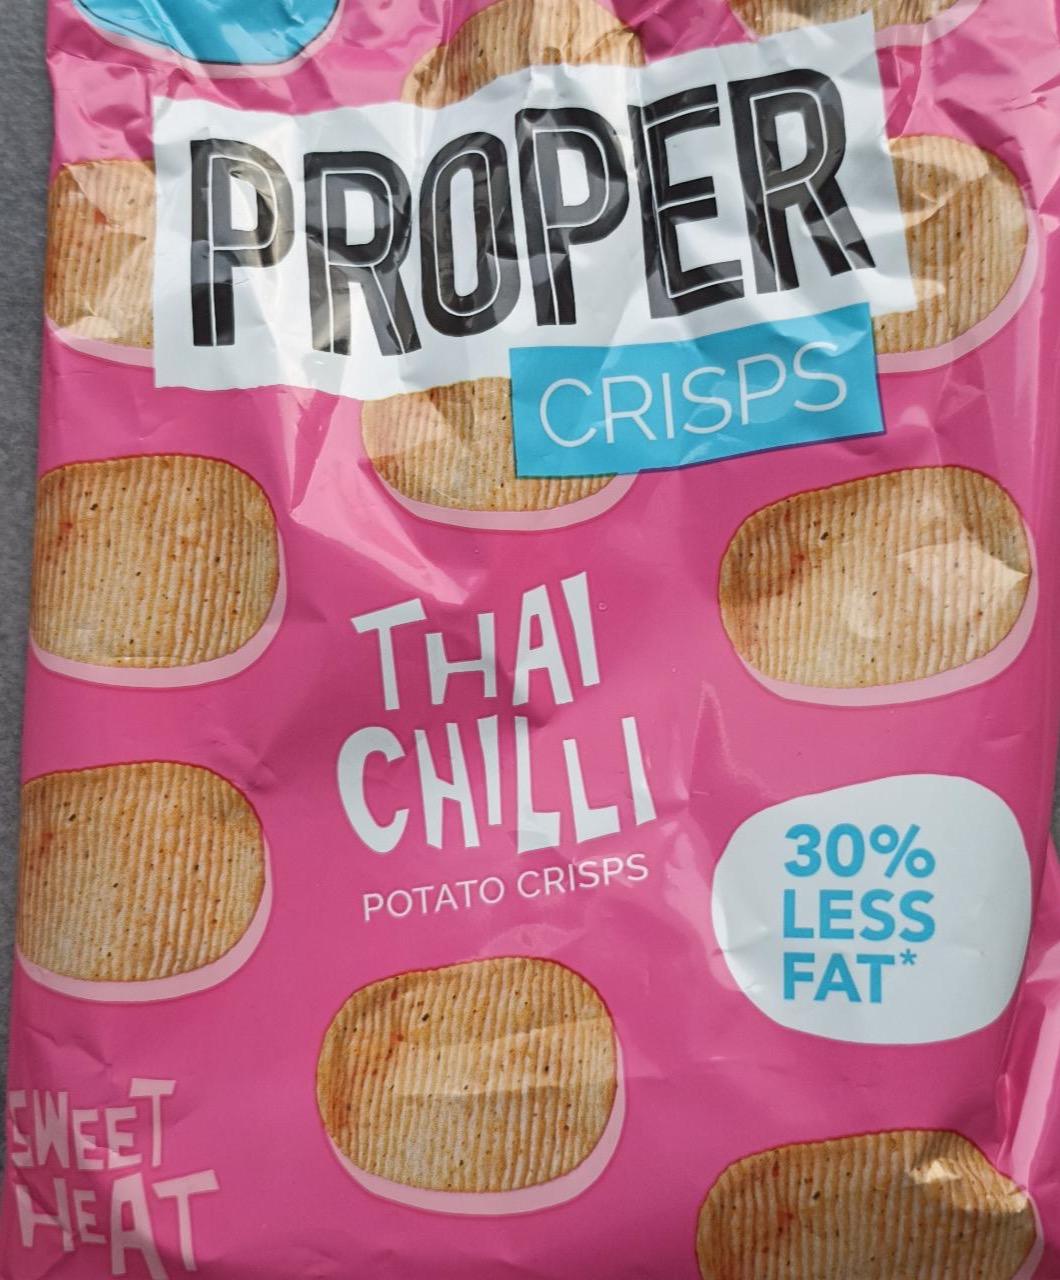 Zdjęcia - Thai chilli potato crisps Proper Crisps